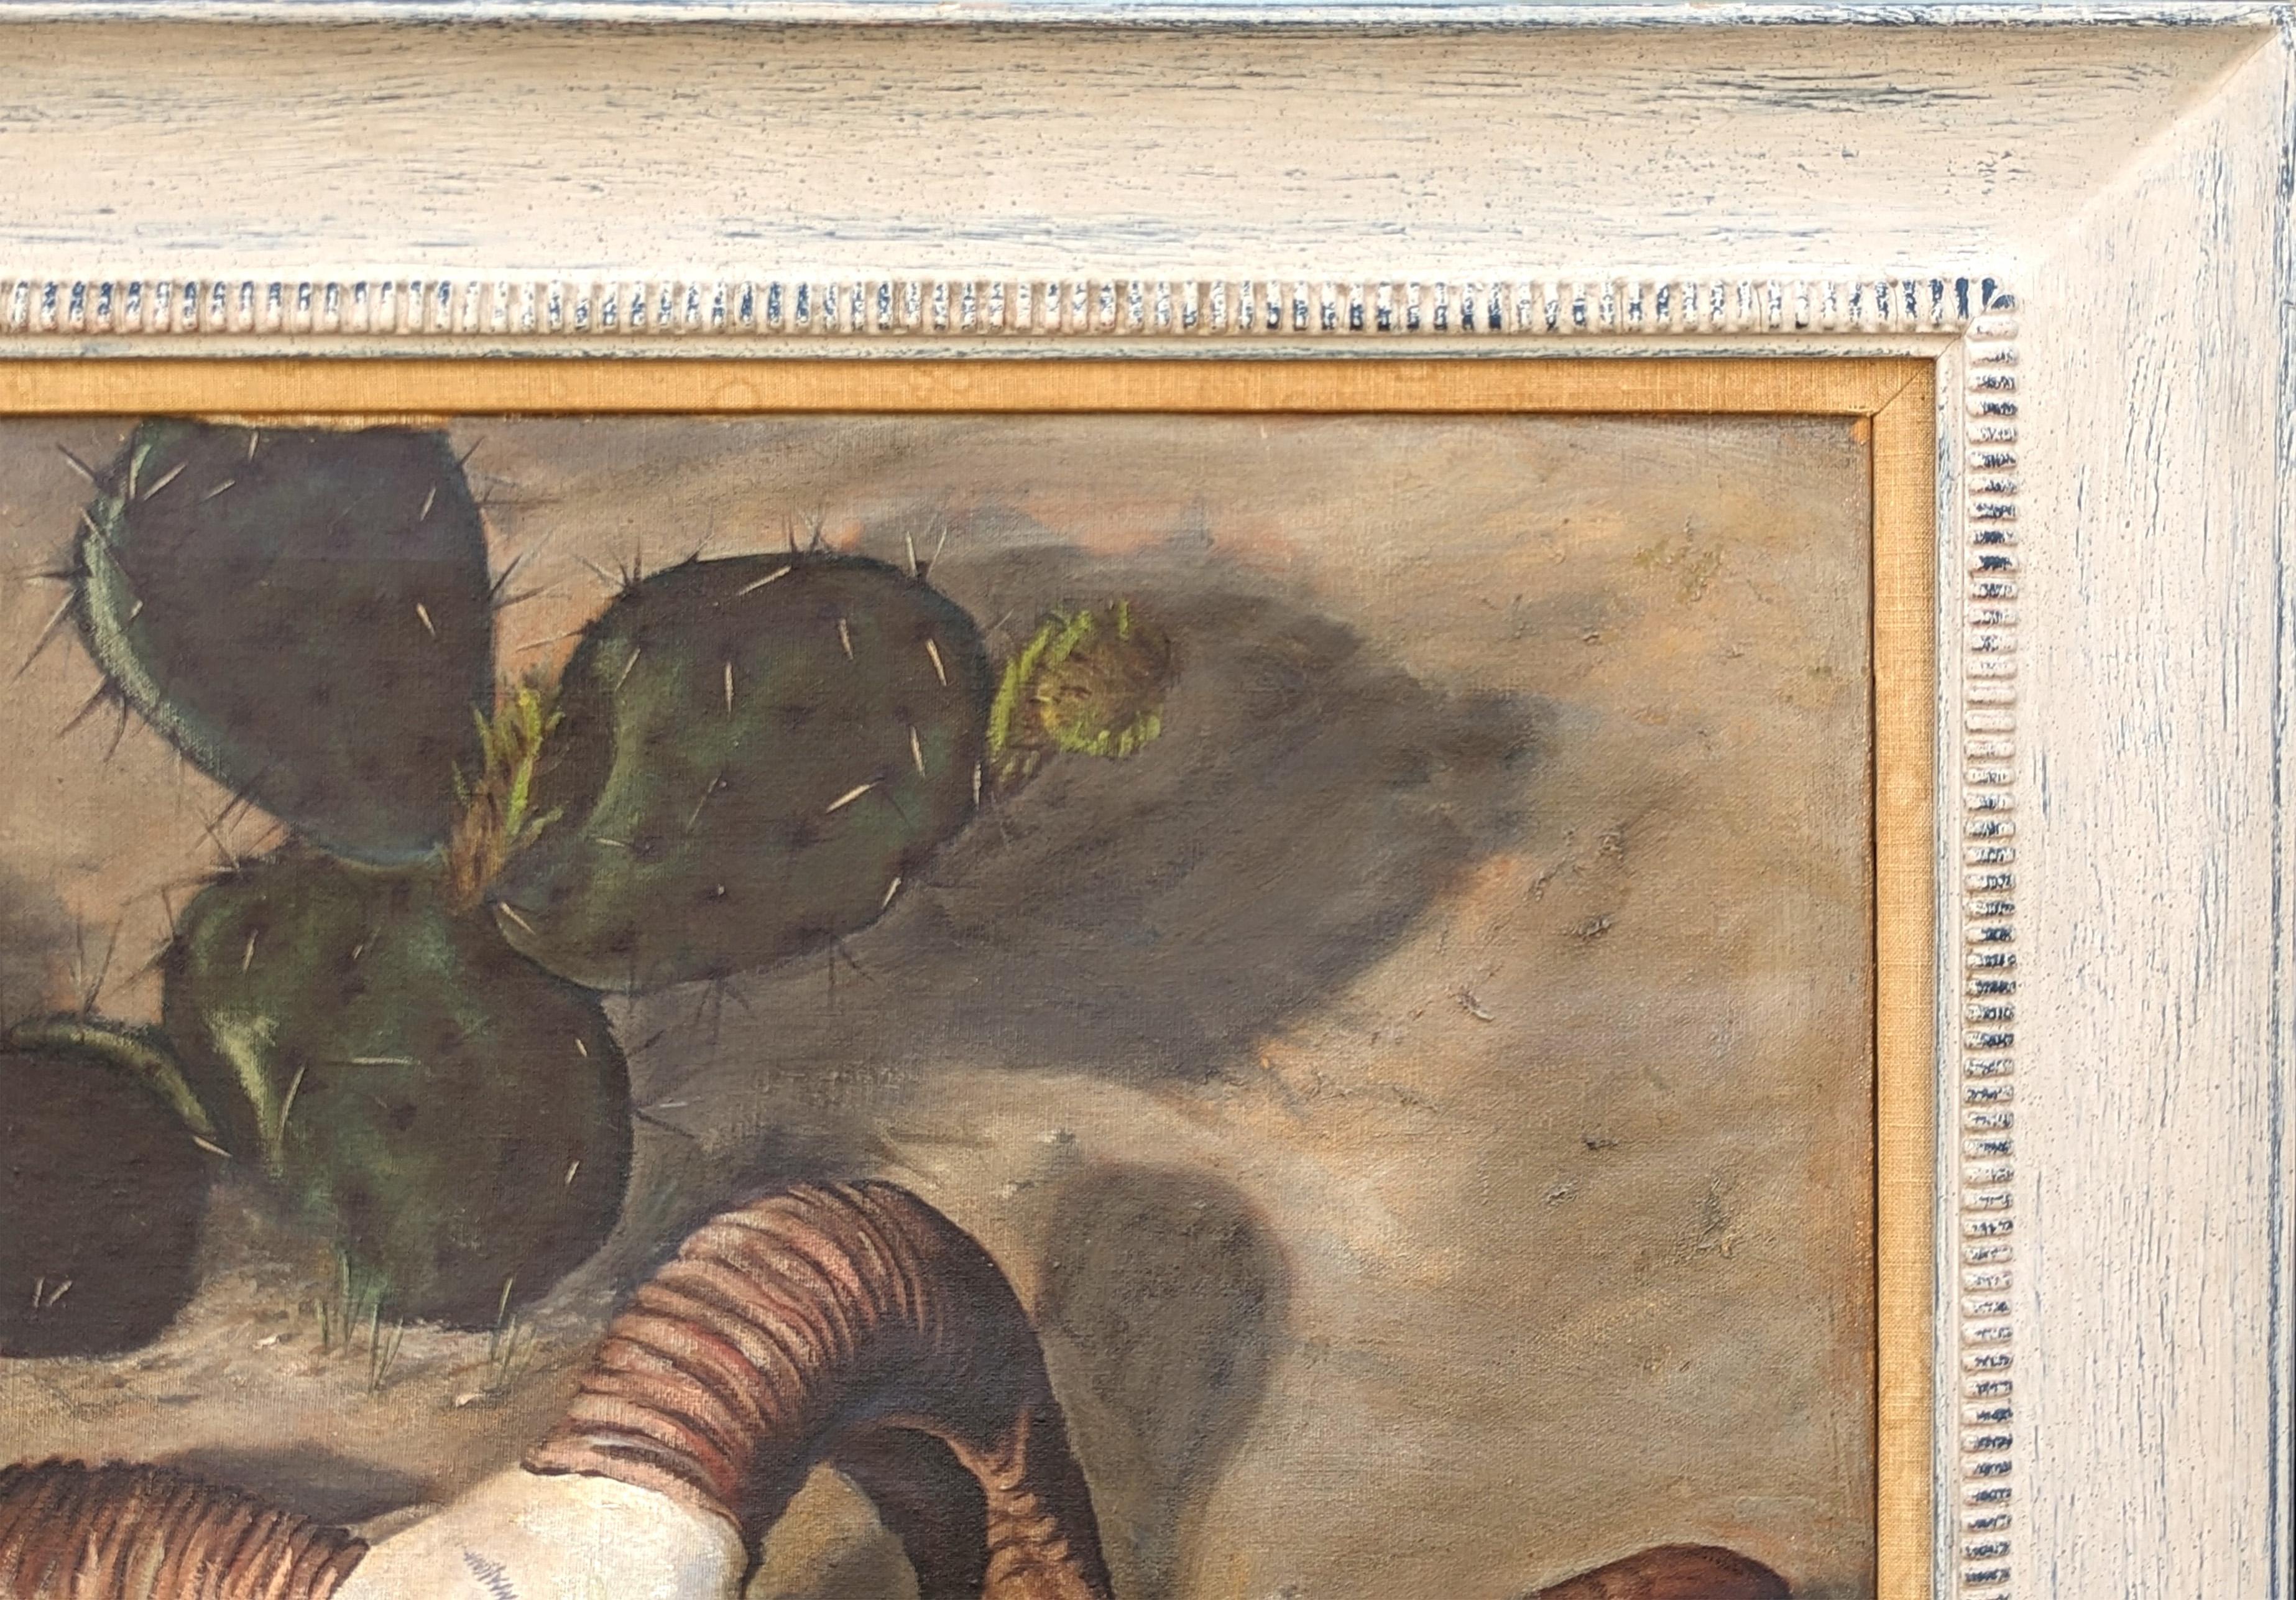 Peinture de paysage naturaliste de l'Ouest réalisée par l'artiste texan Charles Schorre. L'œuvre représente un crâne de bélier au rendu complexe, partiellement enfoui dans la terre à côté d'une touffe de cactus. Cette pièce est un exemple très